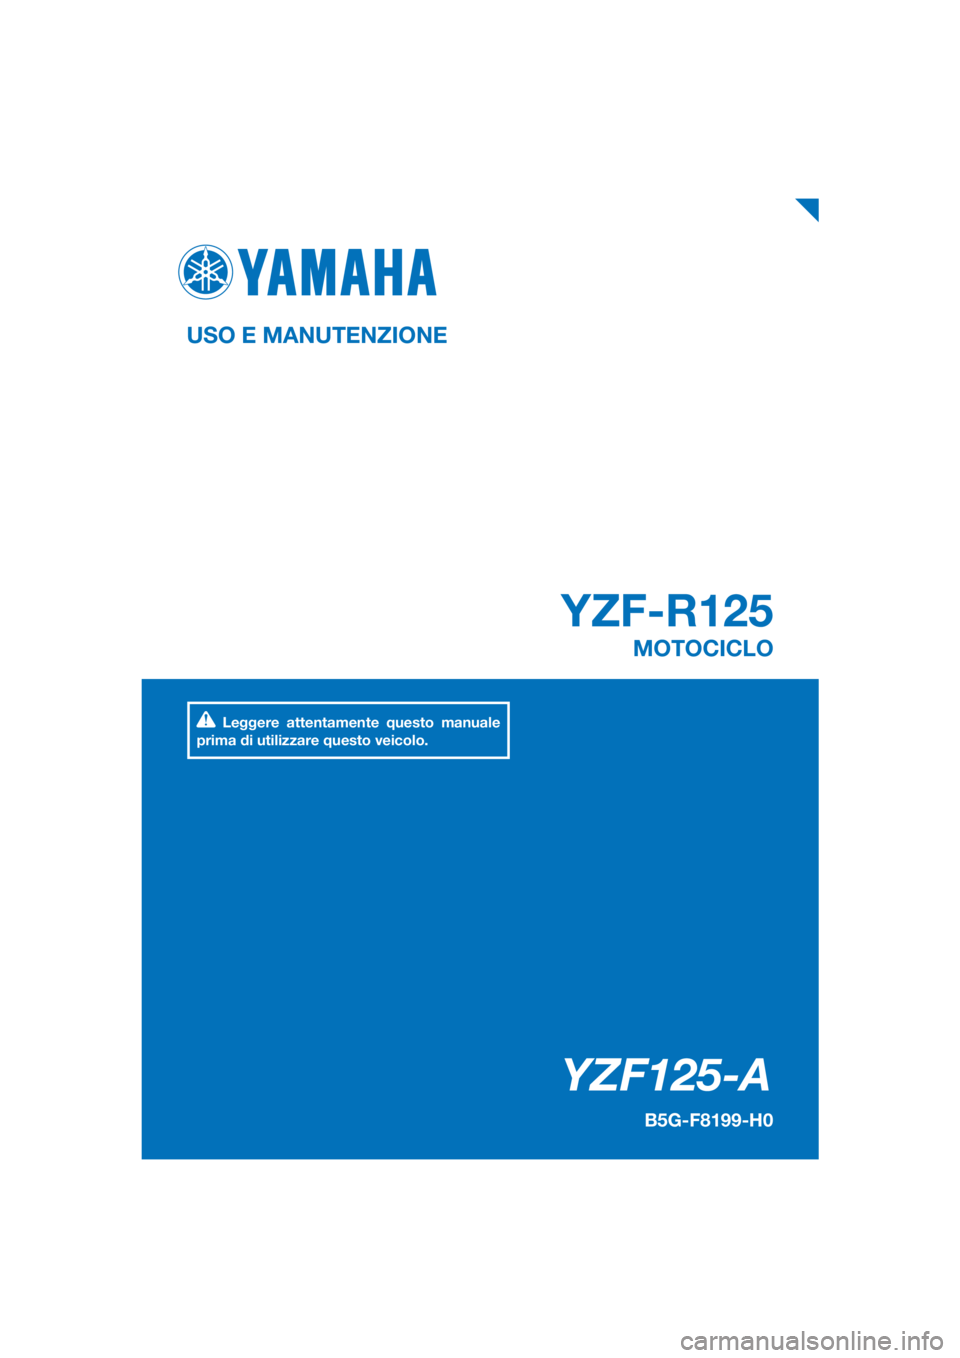 YAMAHA YZF-R125 2019  Manuale duso (in Italian) PANTONE285C
YZF125-A
YZF-R125
USO E MANUTENZIONE
B5G-F8199-H0
MOTOCICLO
Leggere attentamente questo manuale 
prima di utilizzare questo veicolo.
[Italian  (H)] 